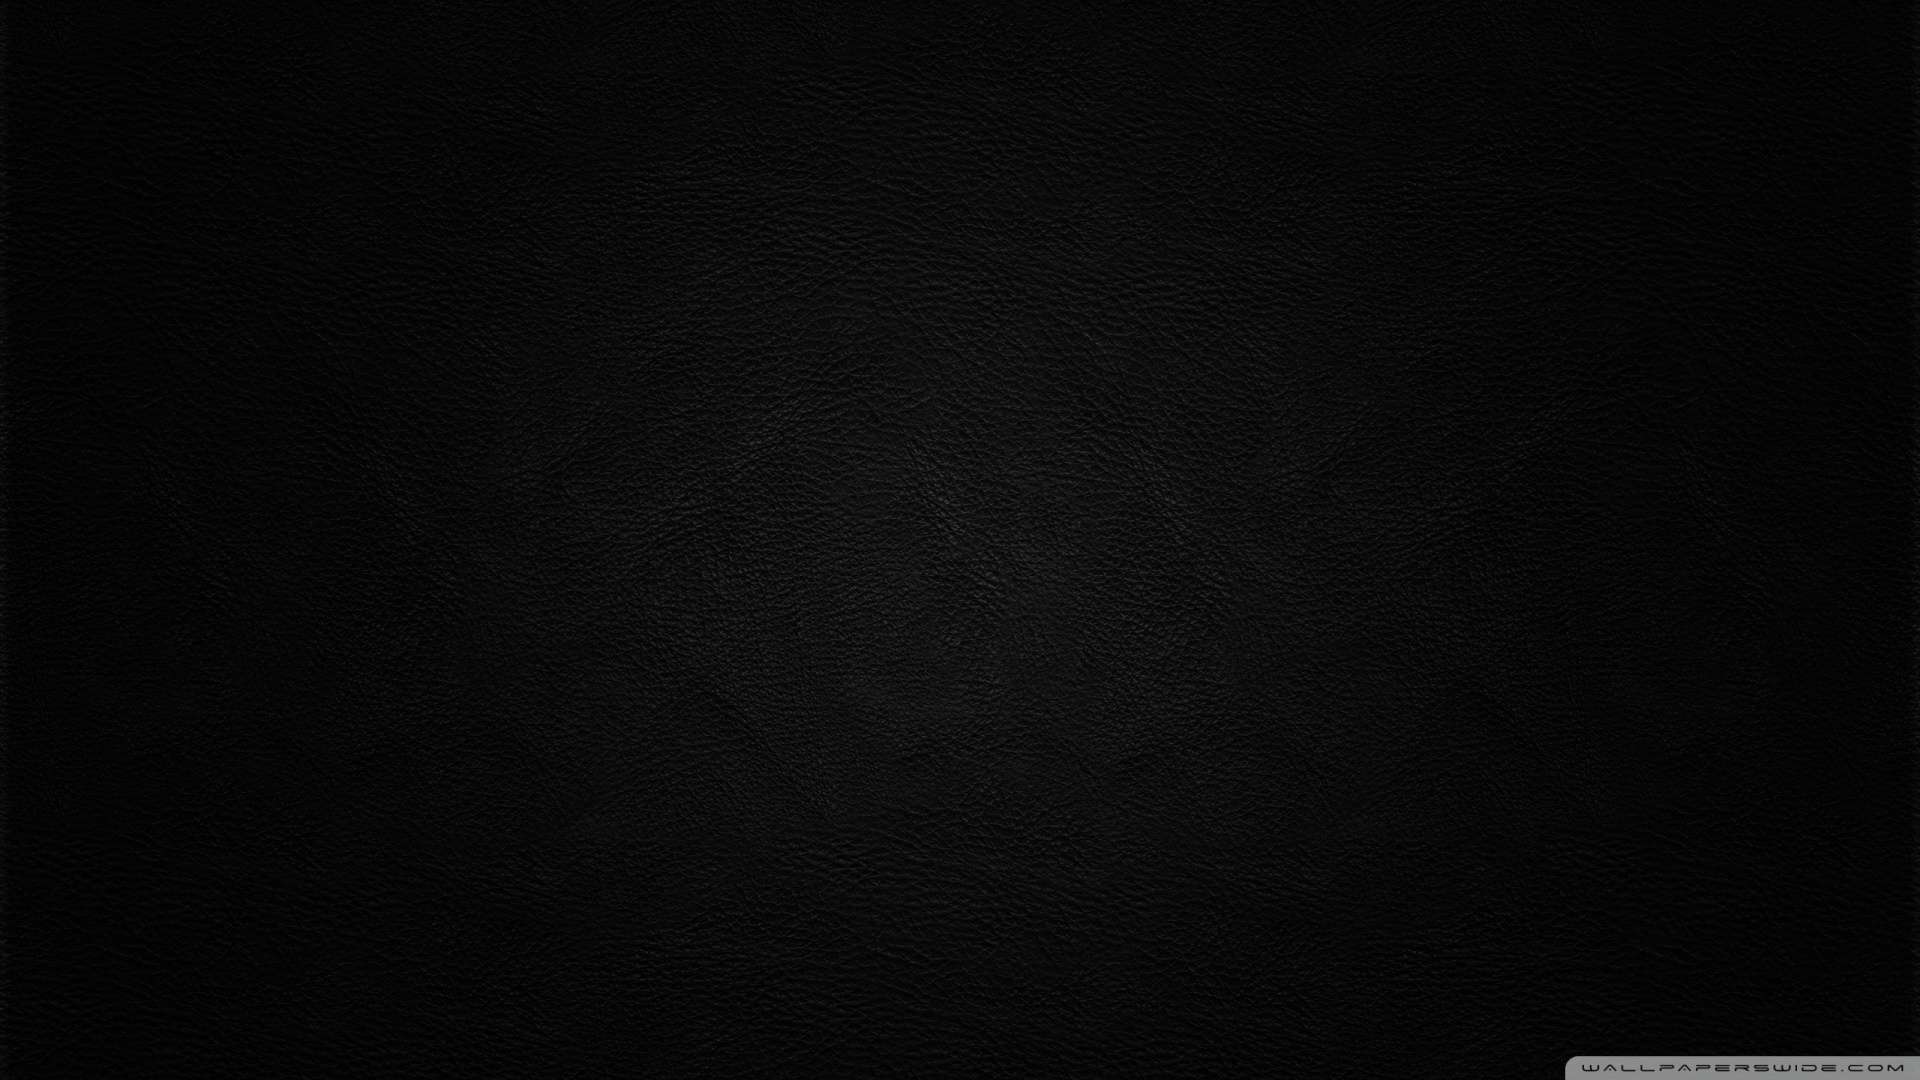 Dark HD Wallpapers 1080p - WallpaperSafari